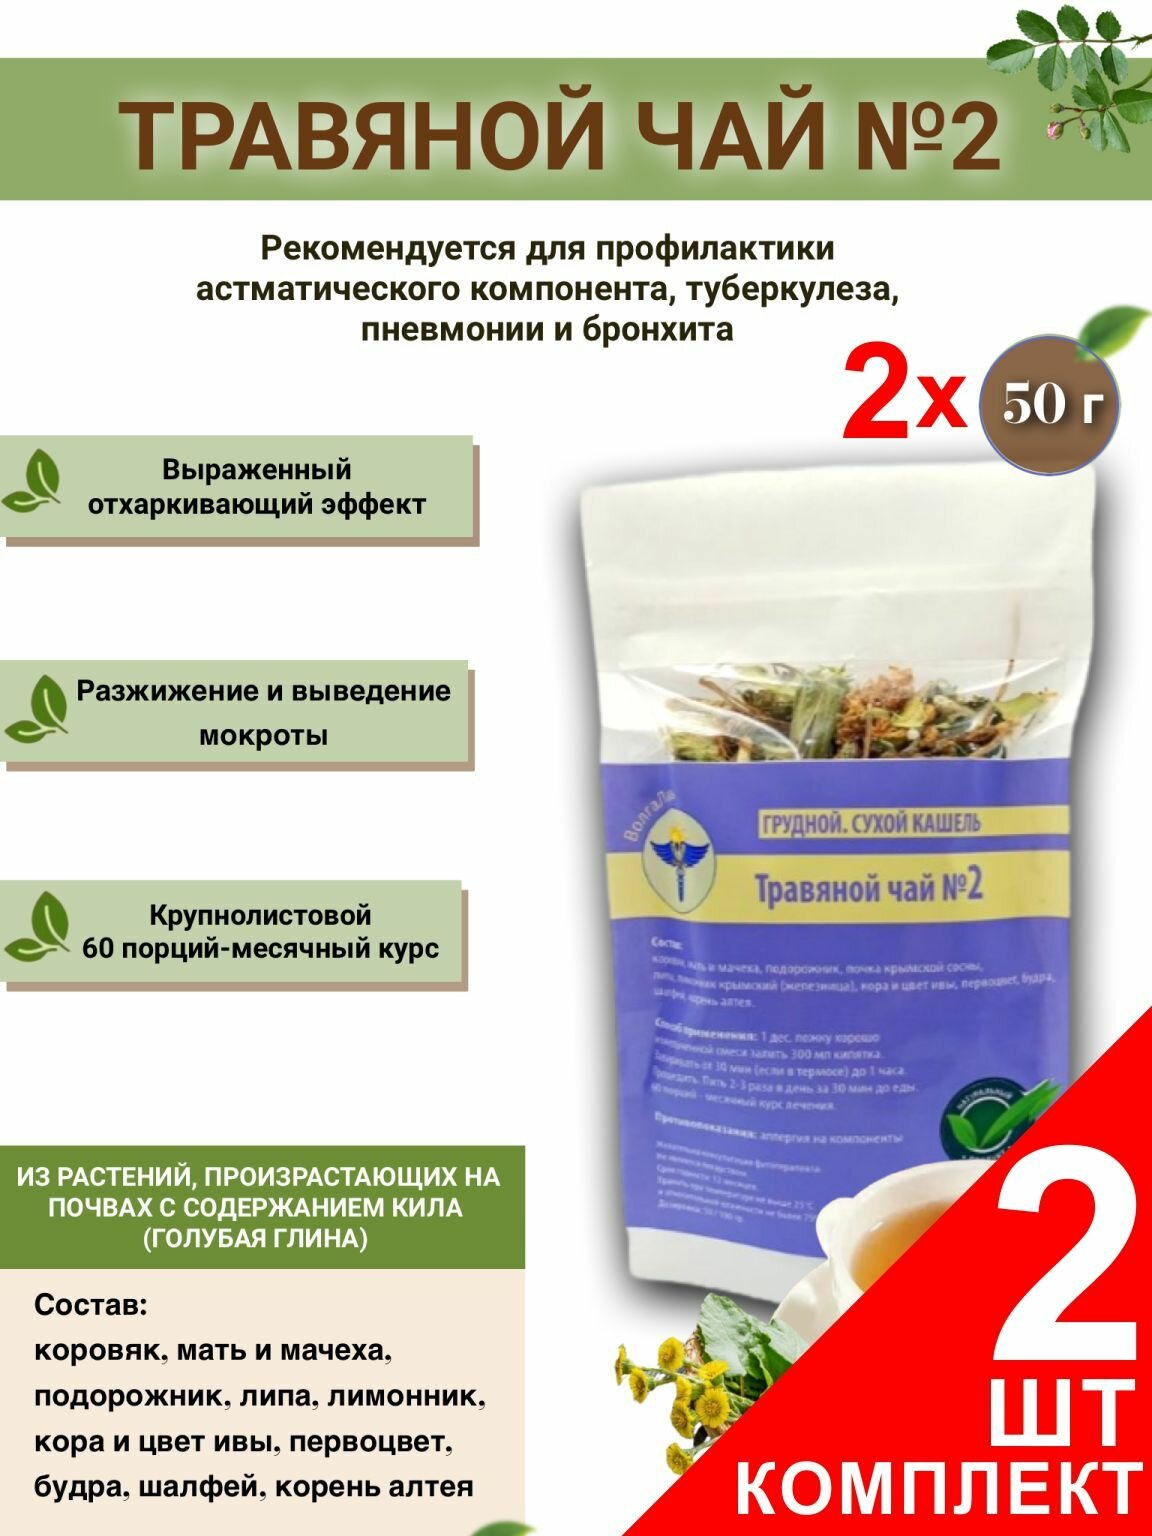 Травяной чай ВолгаЛадь № 2 Грудной. Сухой кашель  набор из 2 упаковок (Курс лечения)